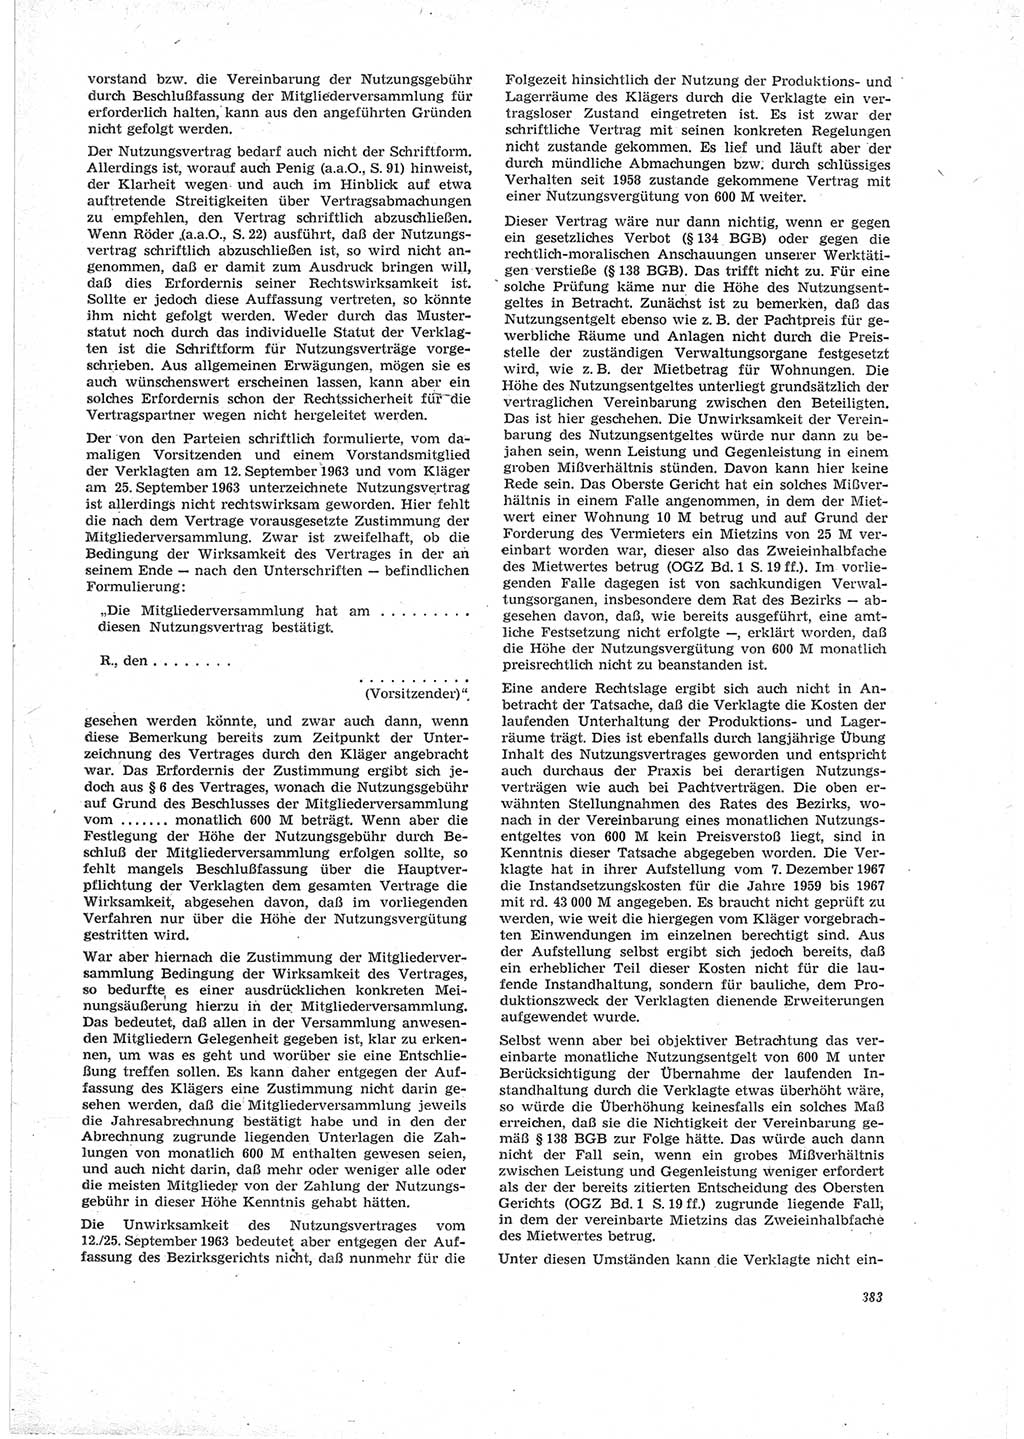 Neue Justiz (NJ), Zeitschrift für Recht und Rechtswissenschaft [Deutsche Demokratische Republik (DDR)], 23. Jahrgang 1969, Seite 383 (NJ DDR 1969, S. 383)